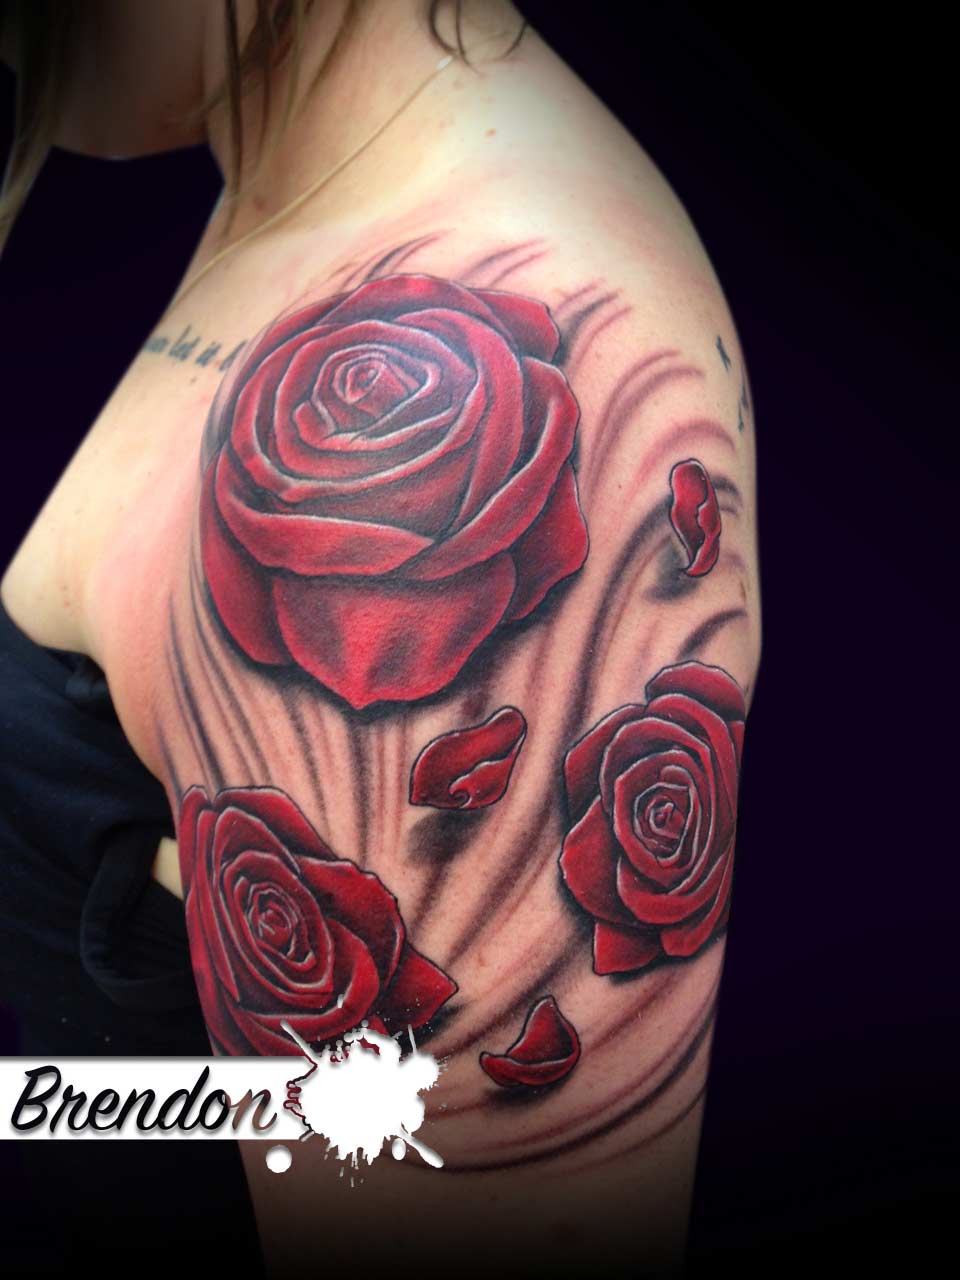 Brendon | Wicked Ink | Tattoo | Piercing | Laser | Beauty